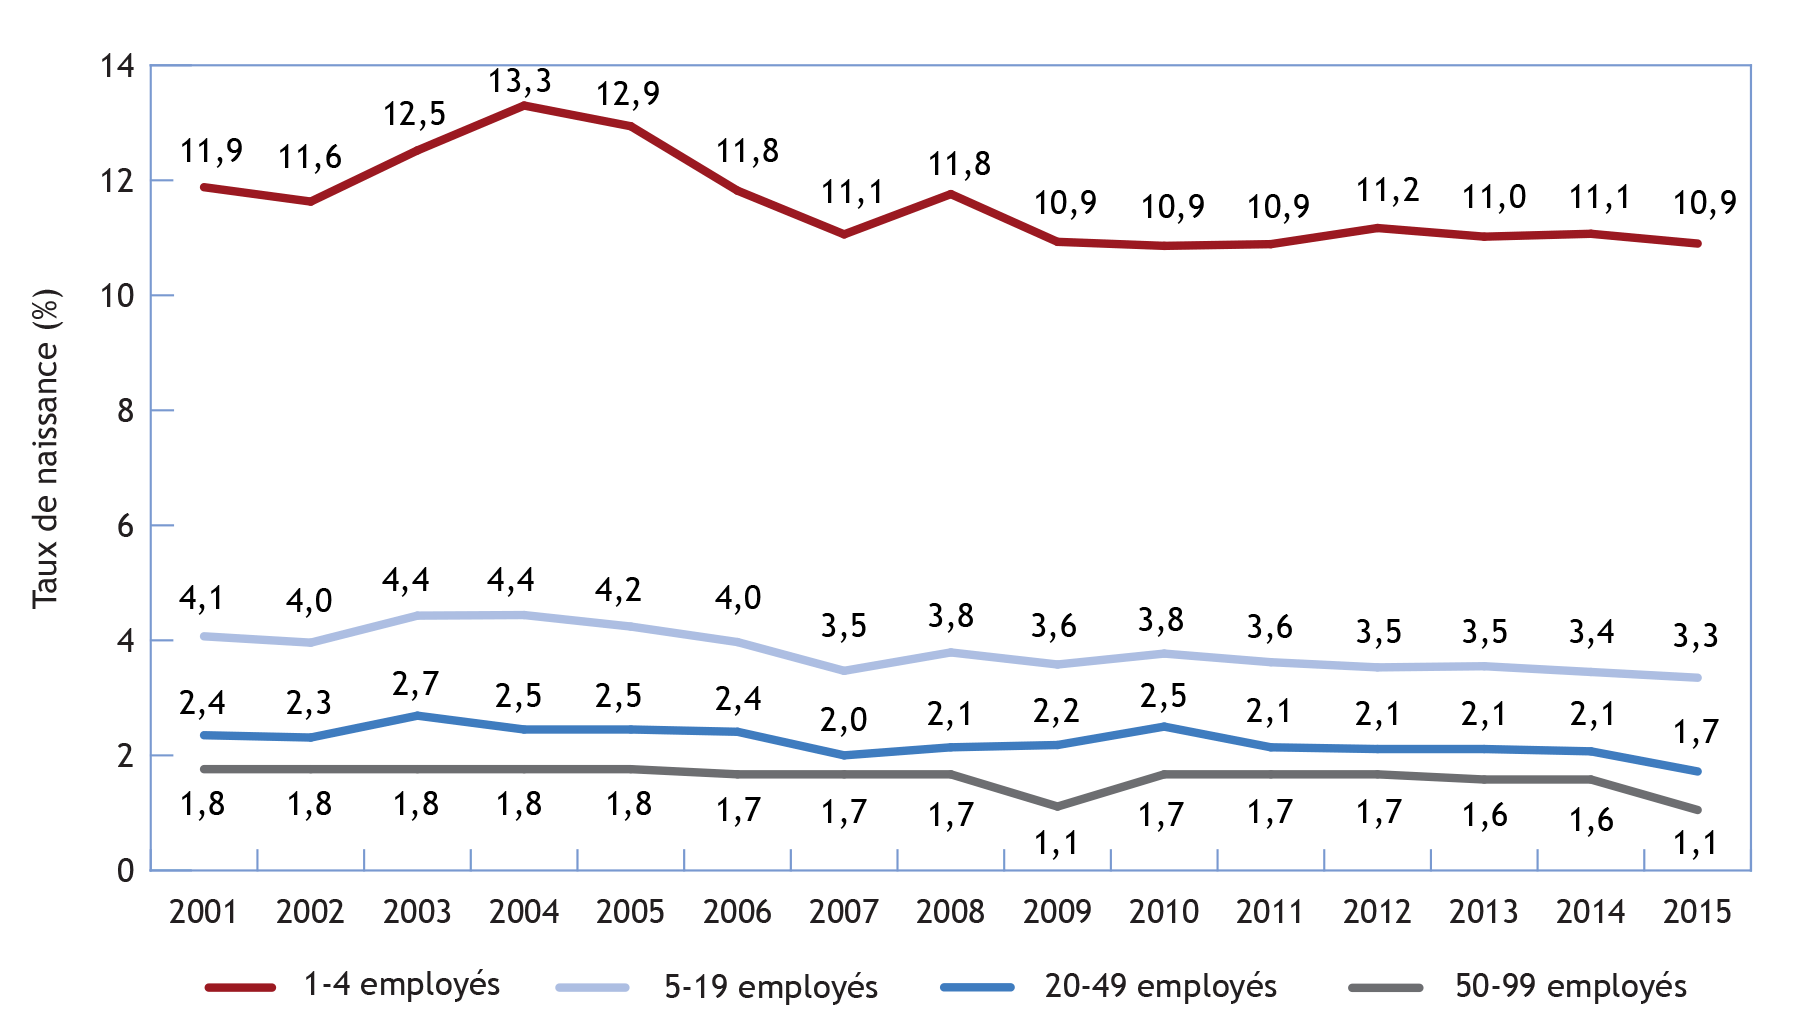 Graphique multi-linéaire illustrant le taux de naissance selon la taille initiale de l'entreprise, Canada, 2001-2015 (la description détaillée se trouve sous l'image)